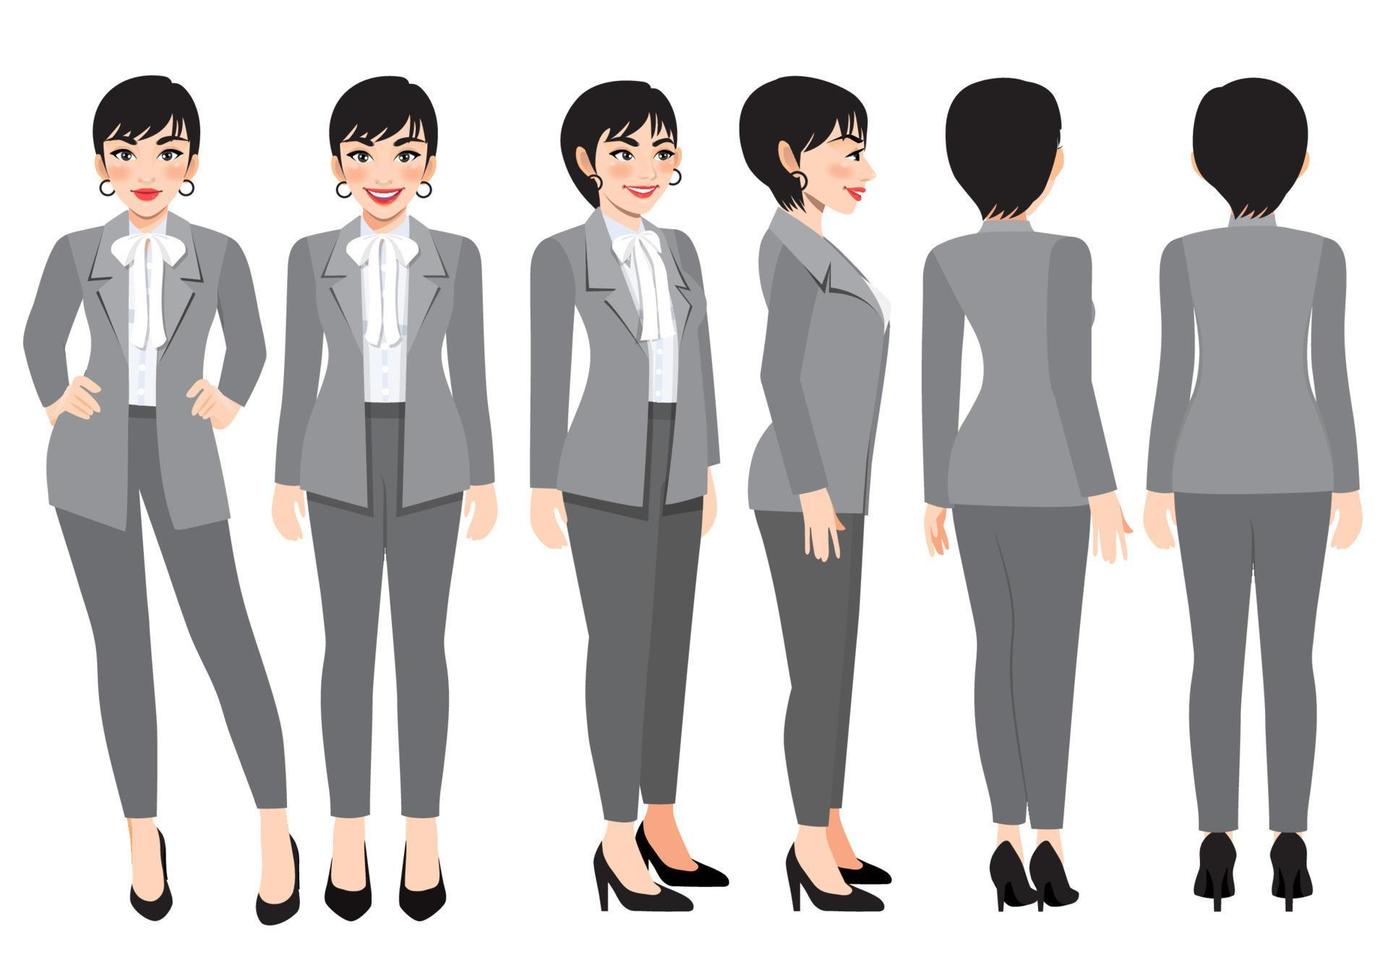 seriefigur med affärskvinna i grå smart kostym för animation. framsida, sida, baksida, 3-4 vykaraktär. platt vektorillustration vektor